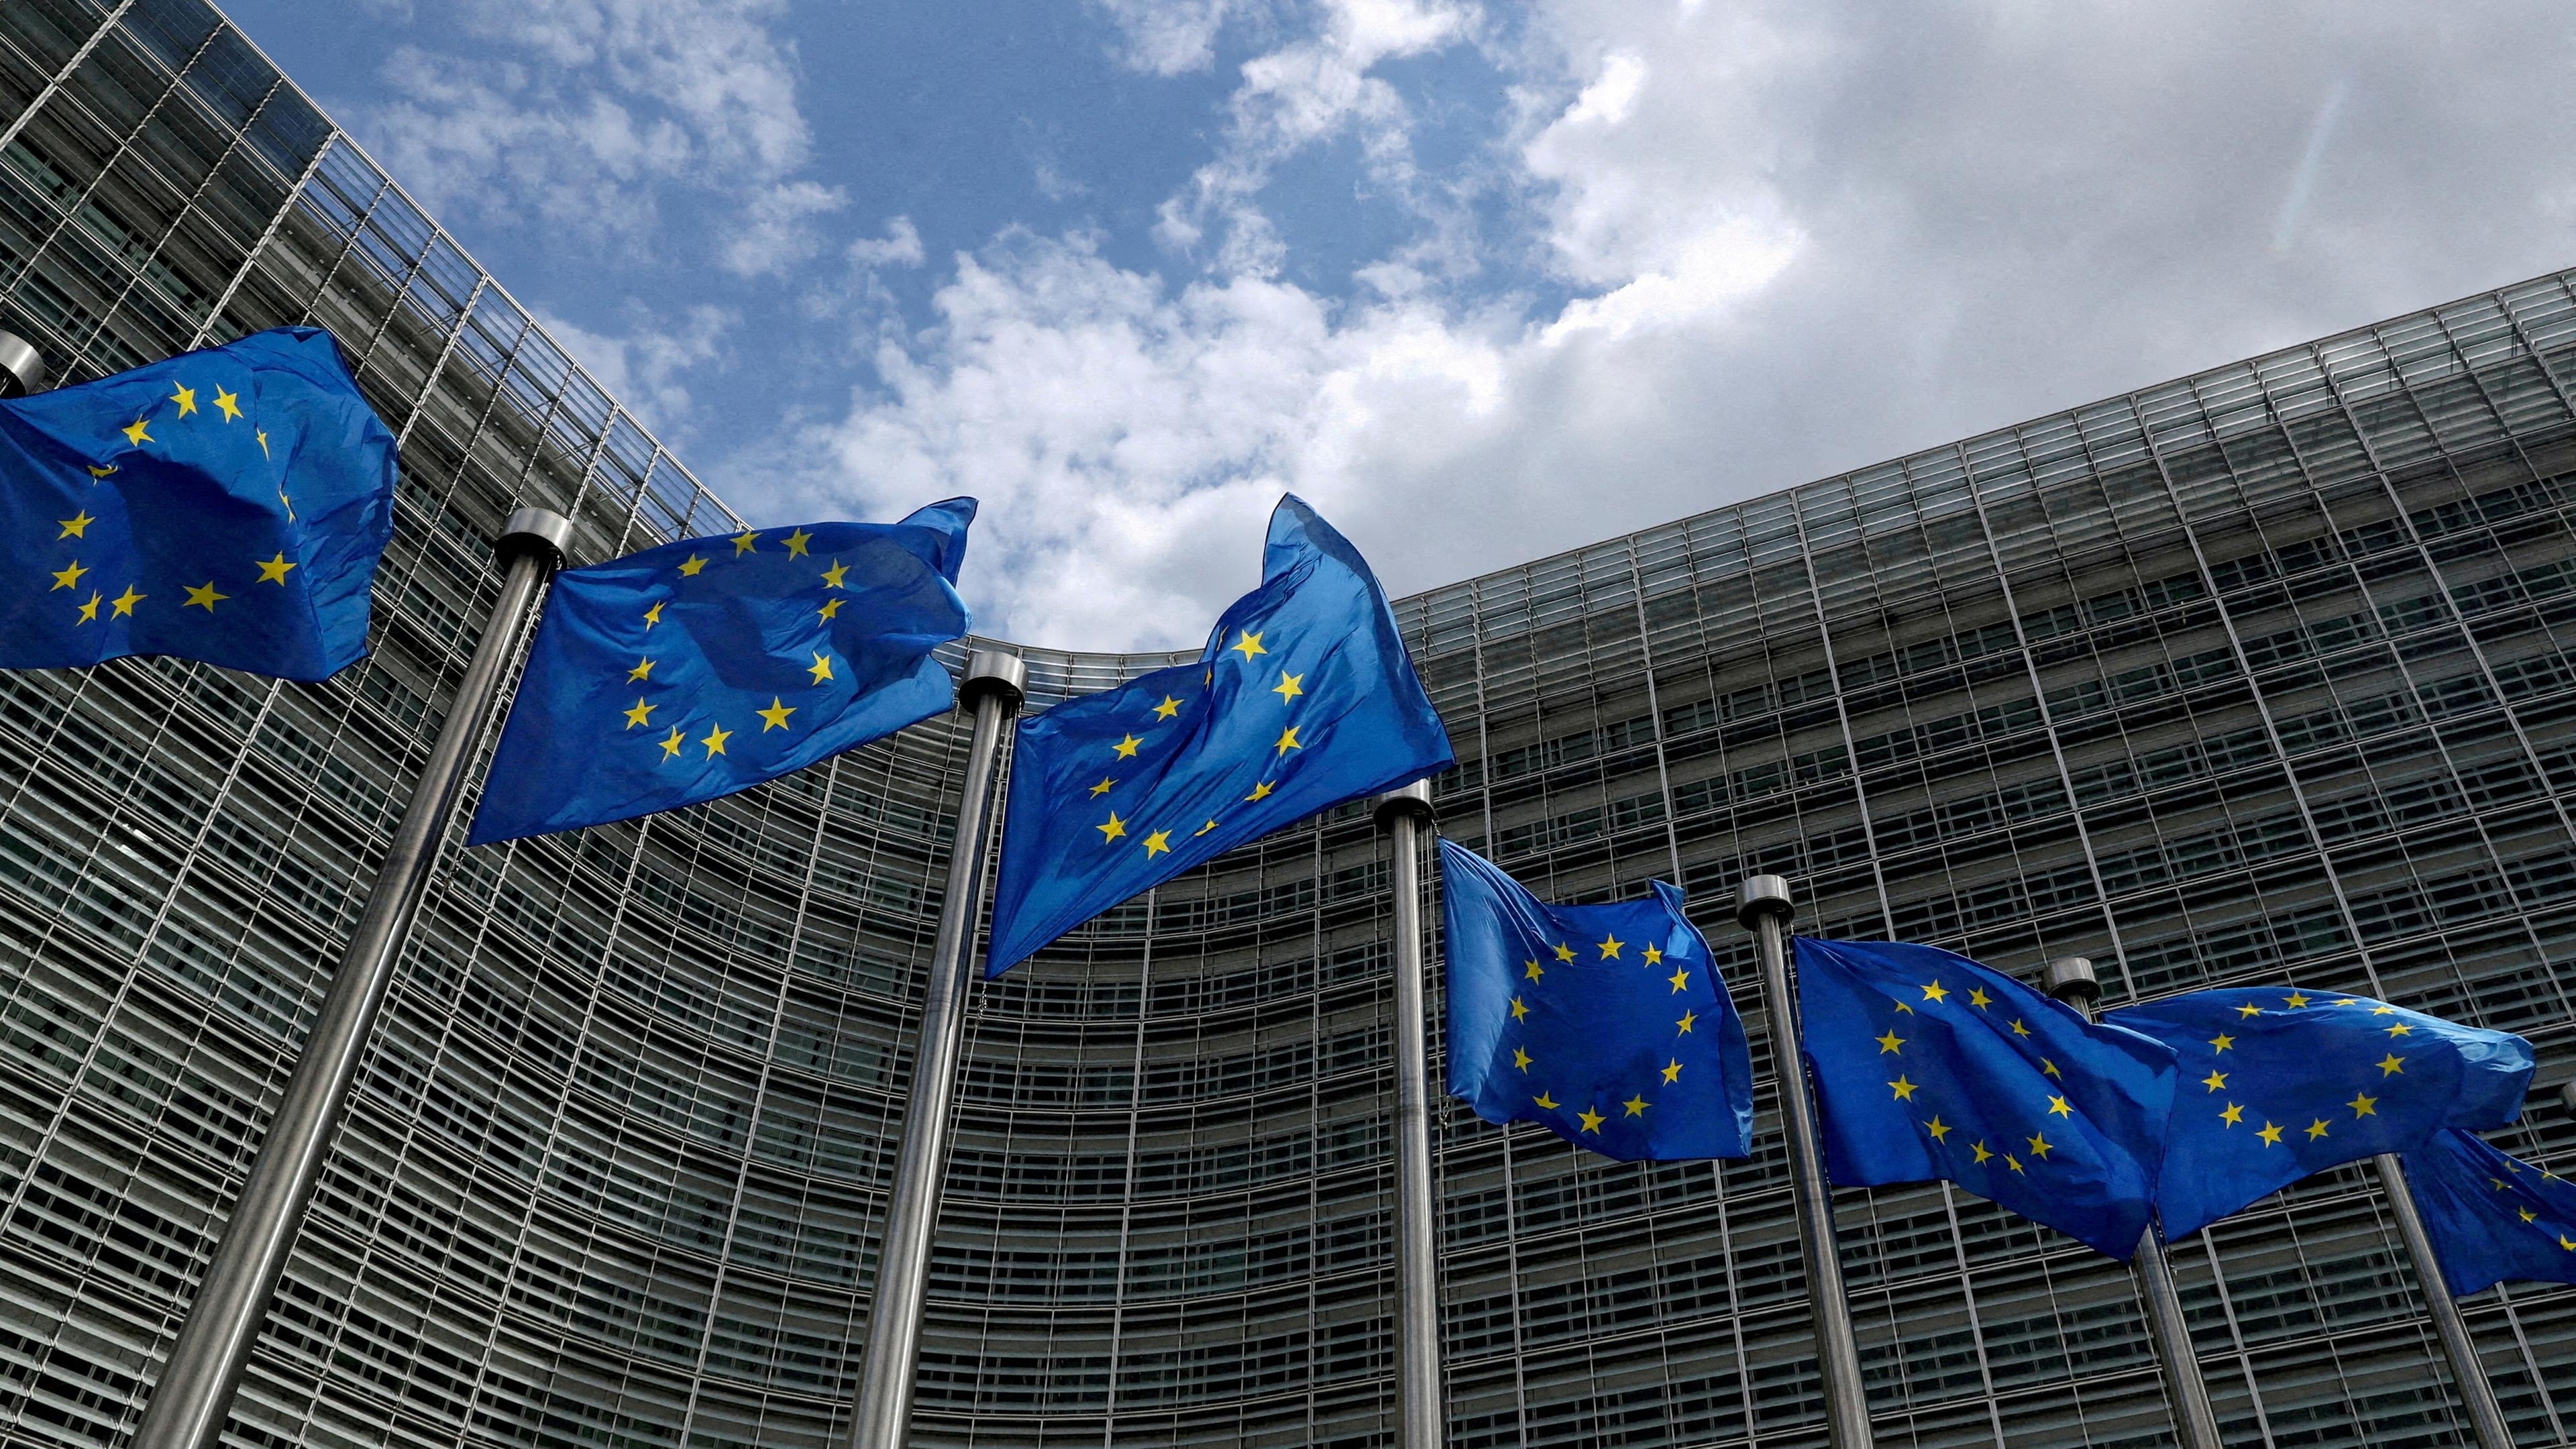 Flaggen der Europäischen Union wehen vor dem Hauptsitz der Europäischen Kommission in Brüssel, Belgien